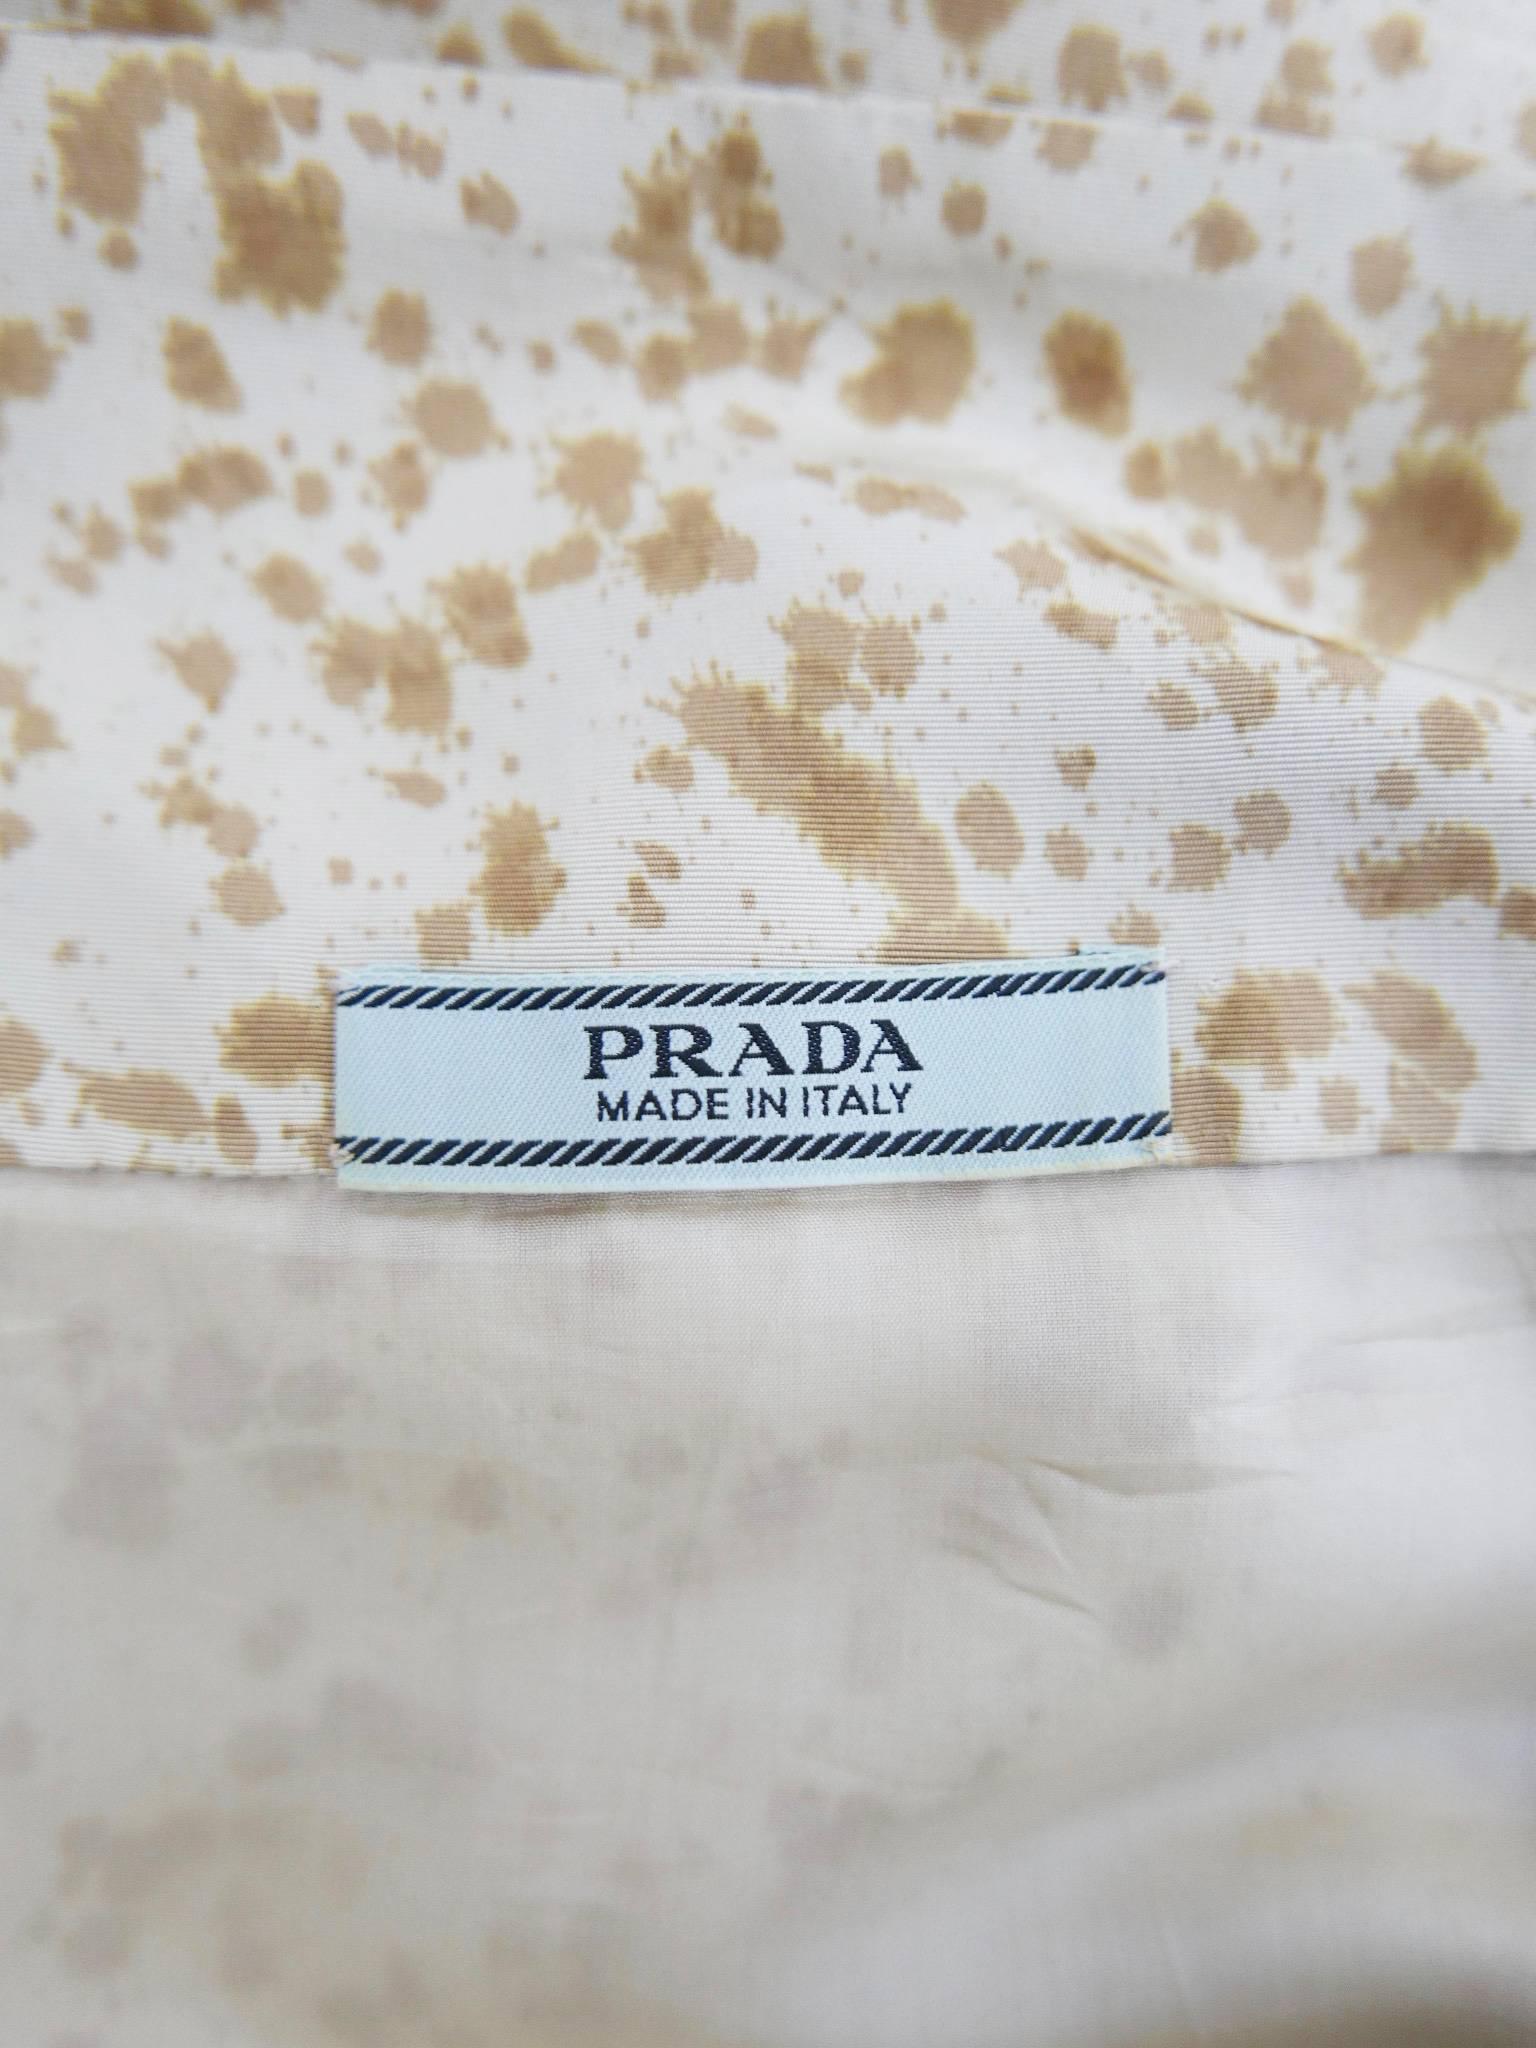 PRADA Arabesque Print Embroidered Dress For Sale 2